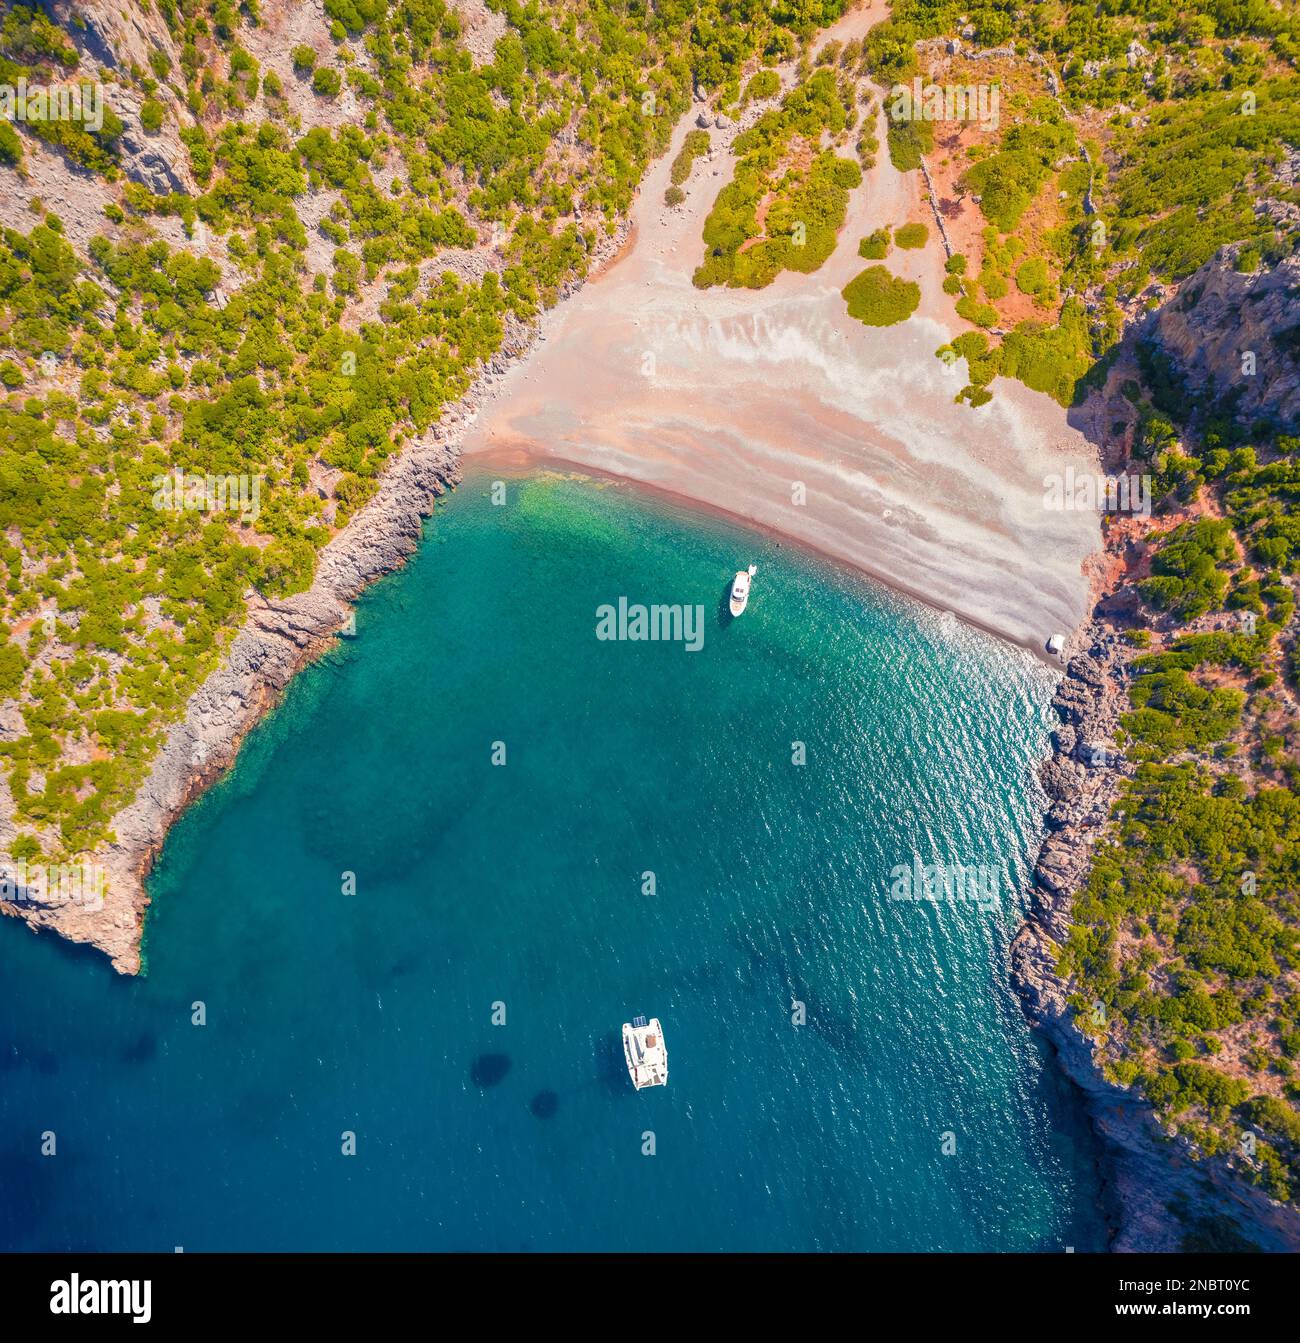 Direkter Blick von der fliegenden Drohne auf DAMOS Beach. Helle Sommerszene der Halbinsel Peloponnes, Griechenland, Europa. Herrliche Morgenlandschaft von Mediter Stockfoto